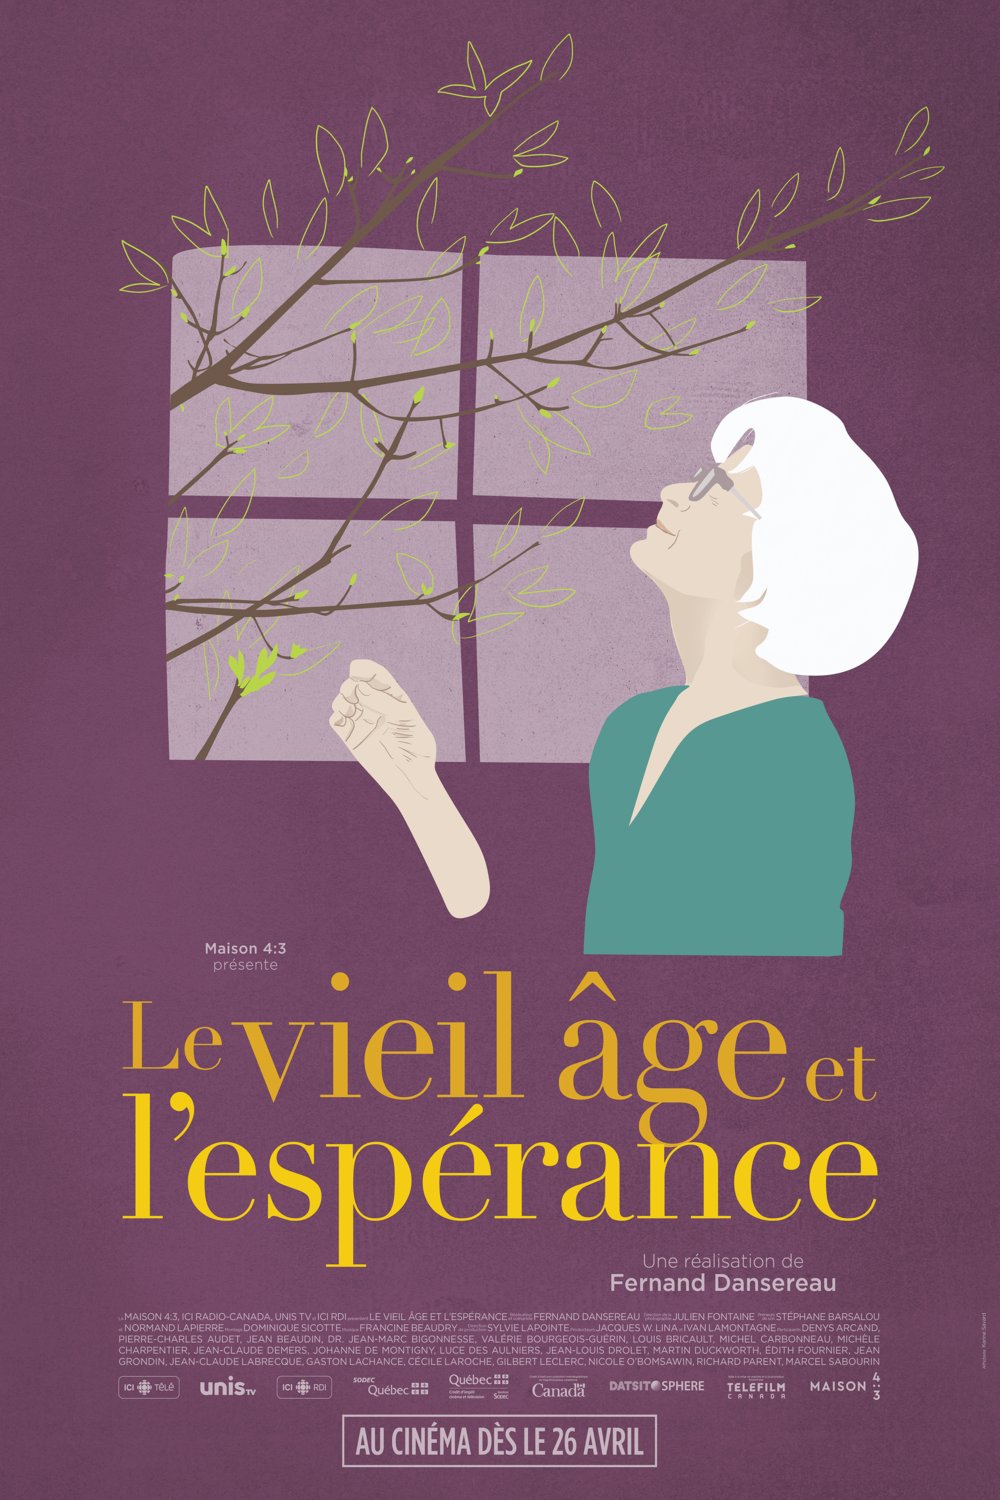 Poster of the movie Le vieil âge et l'espérance